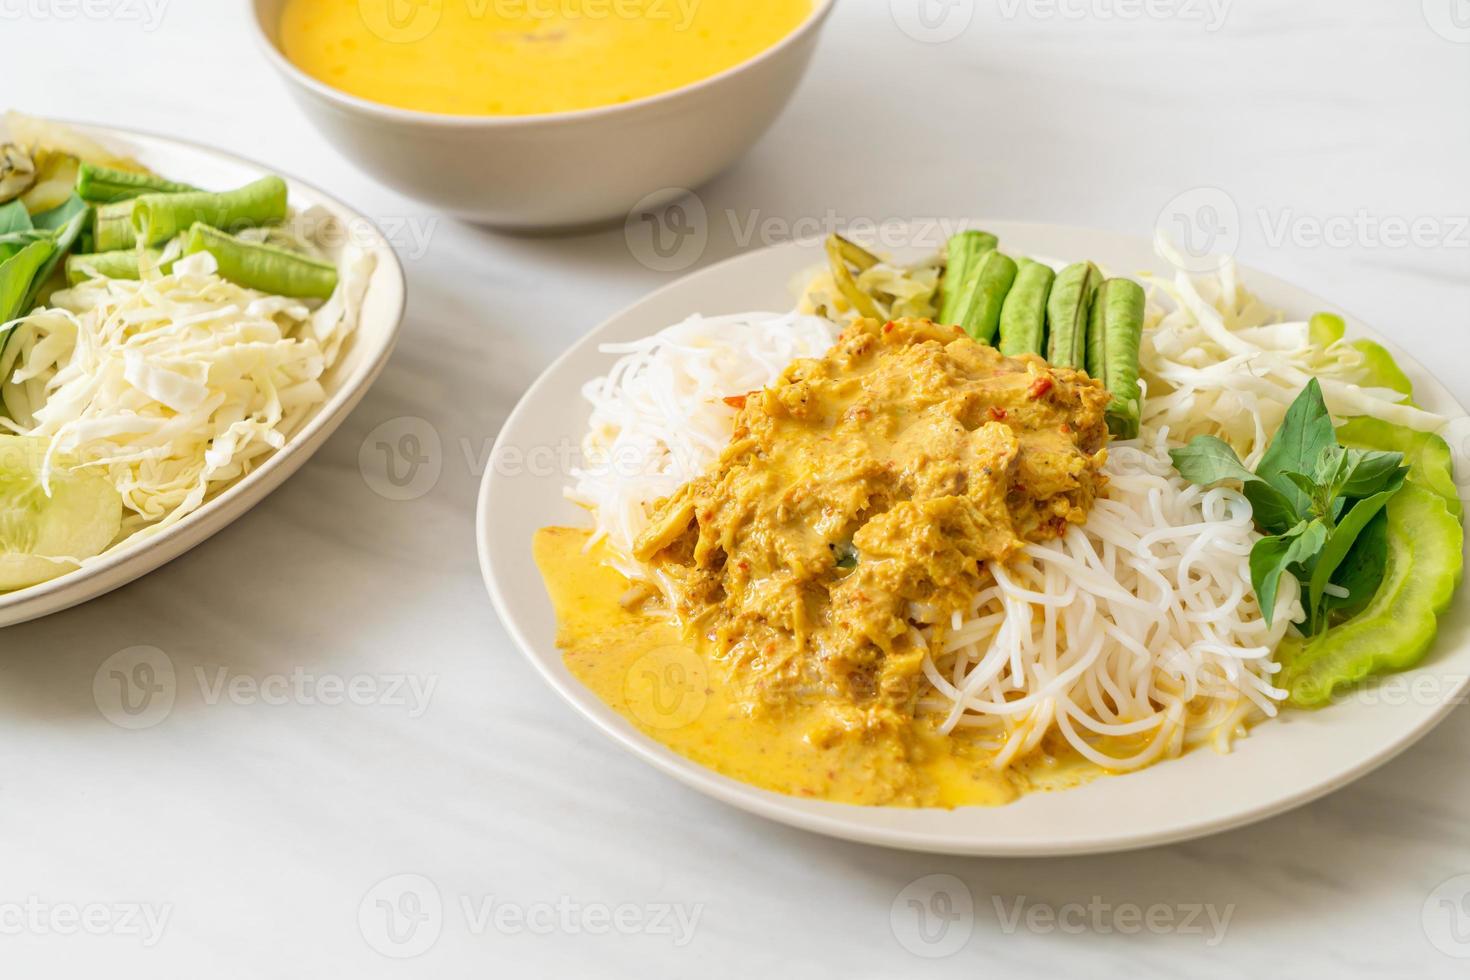 Macarrão de arroz tailandês com caril de caranguejo e vegetais variados foto